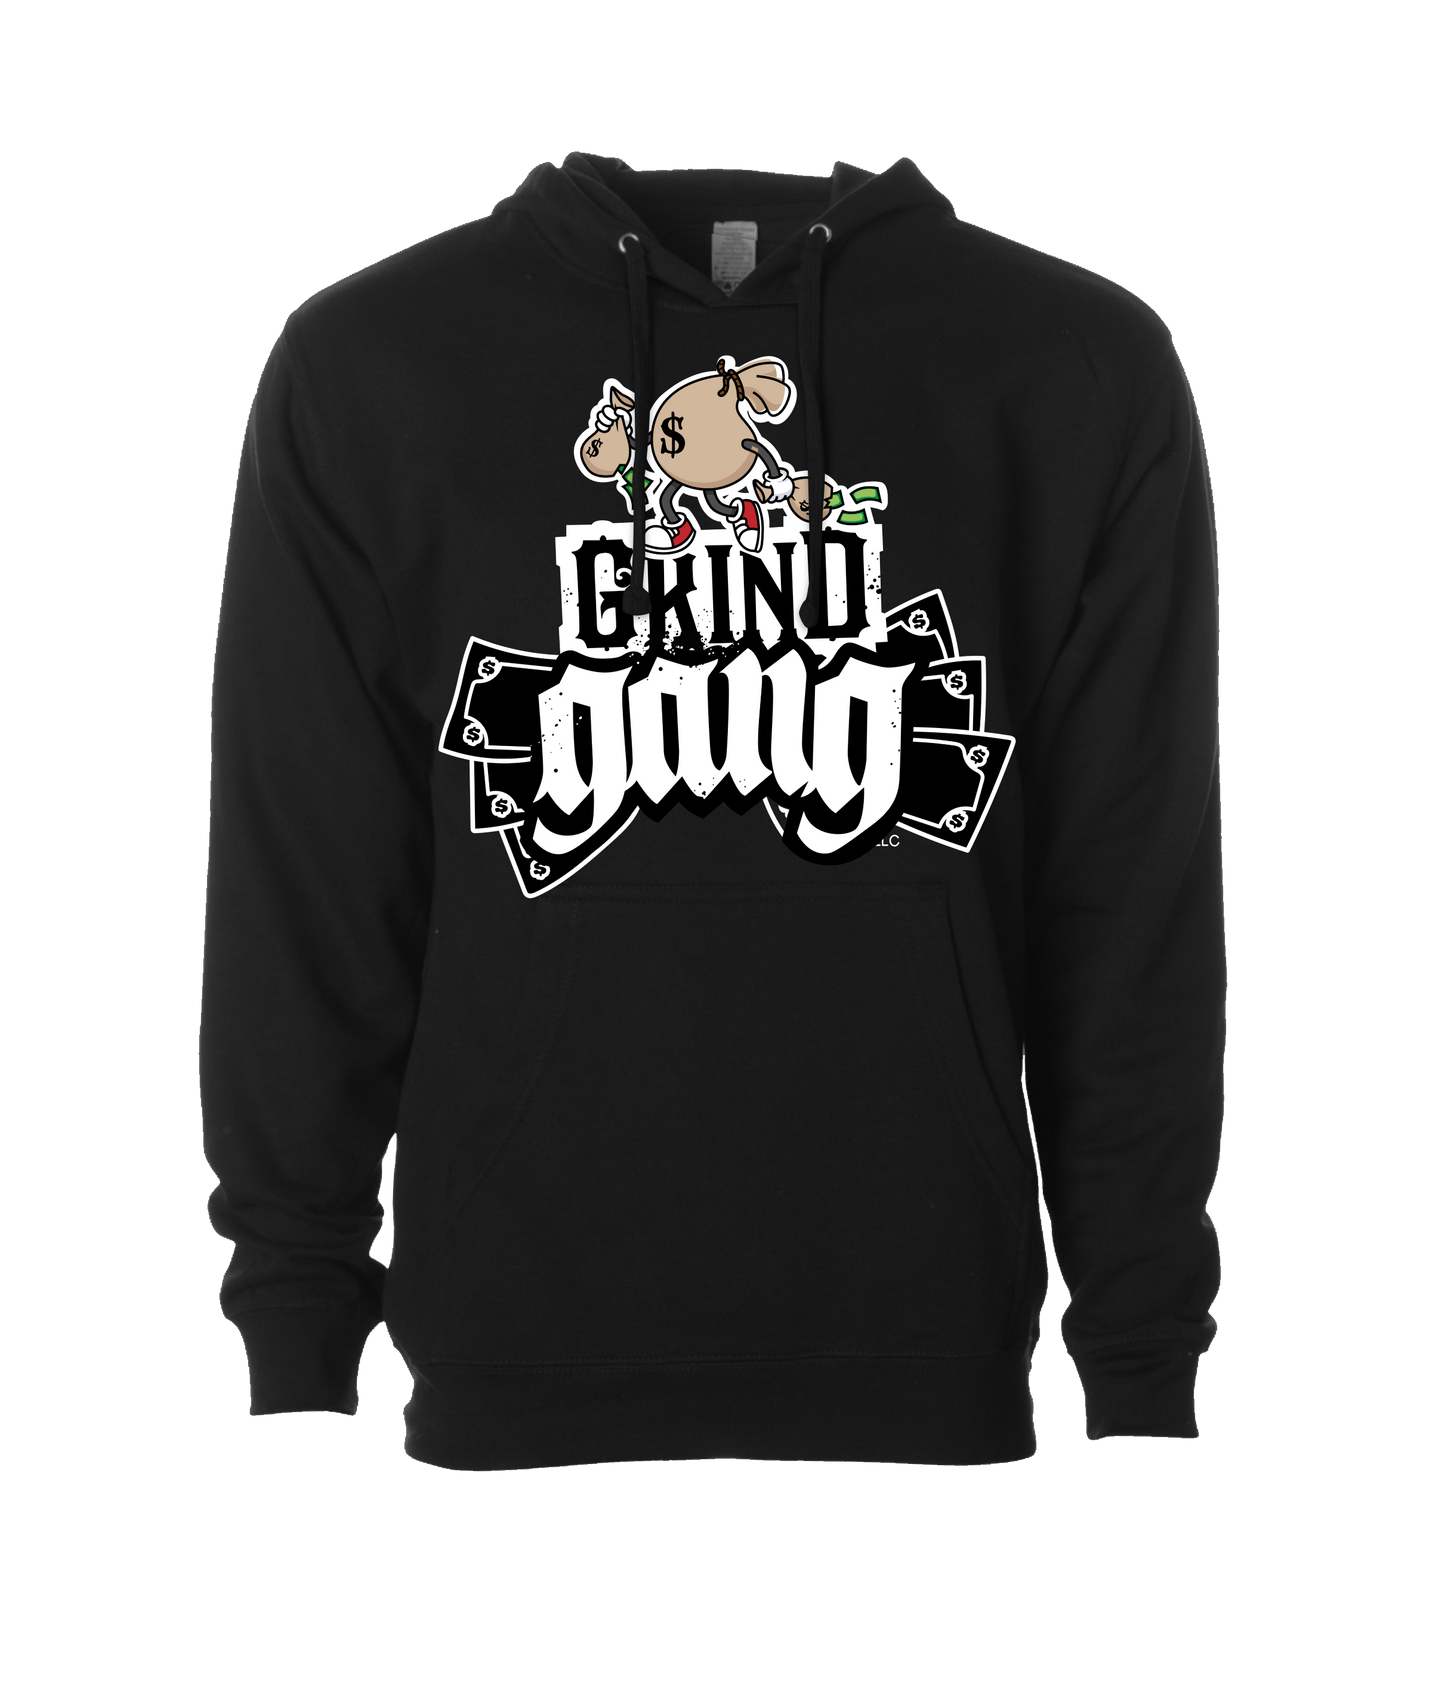 GRIND GANG ENT. LLC - MONEY BAG LOGO 2 - Black Hoodie